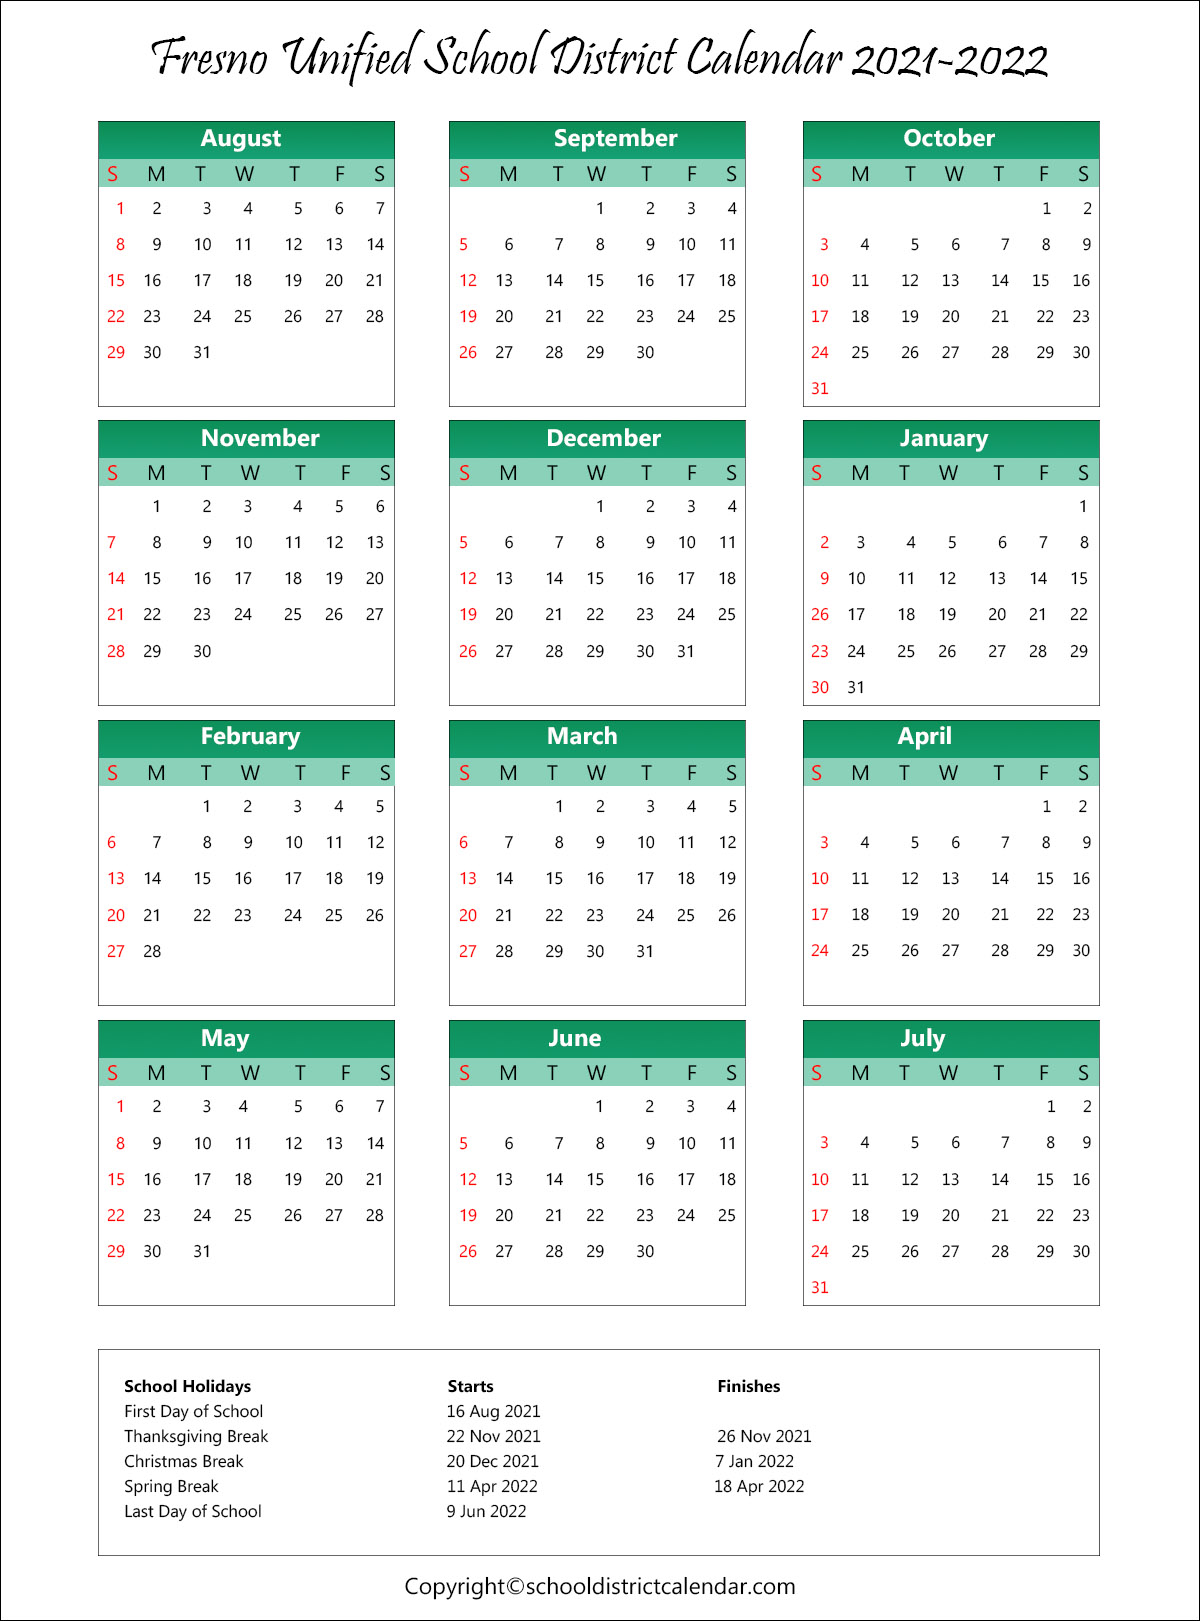 Fresno State Calendar Spring 2022 Fresno Unified School District Calendar Holidays 2021-2022